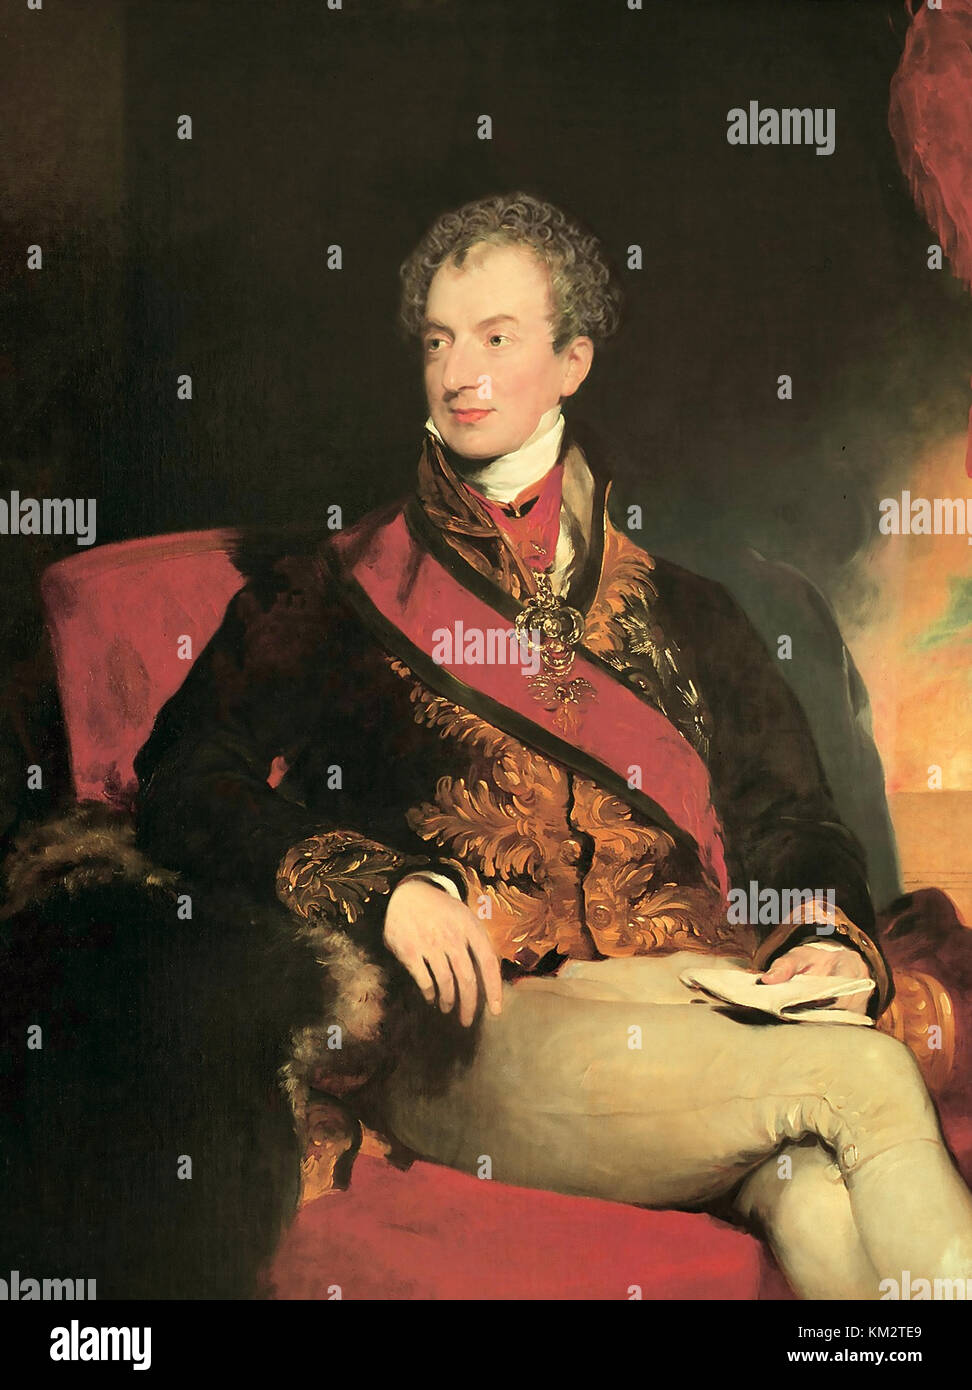 Principe KLEMENS von METTERNICH (1773-1859) diplomatico e statista tedesco. Dipinto di Thomas Lawrence nel 1815. Foto Stock